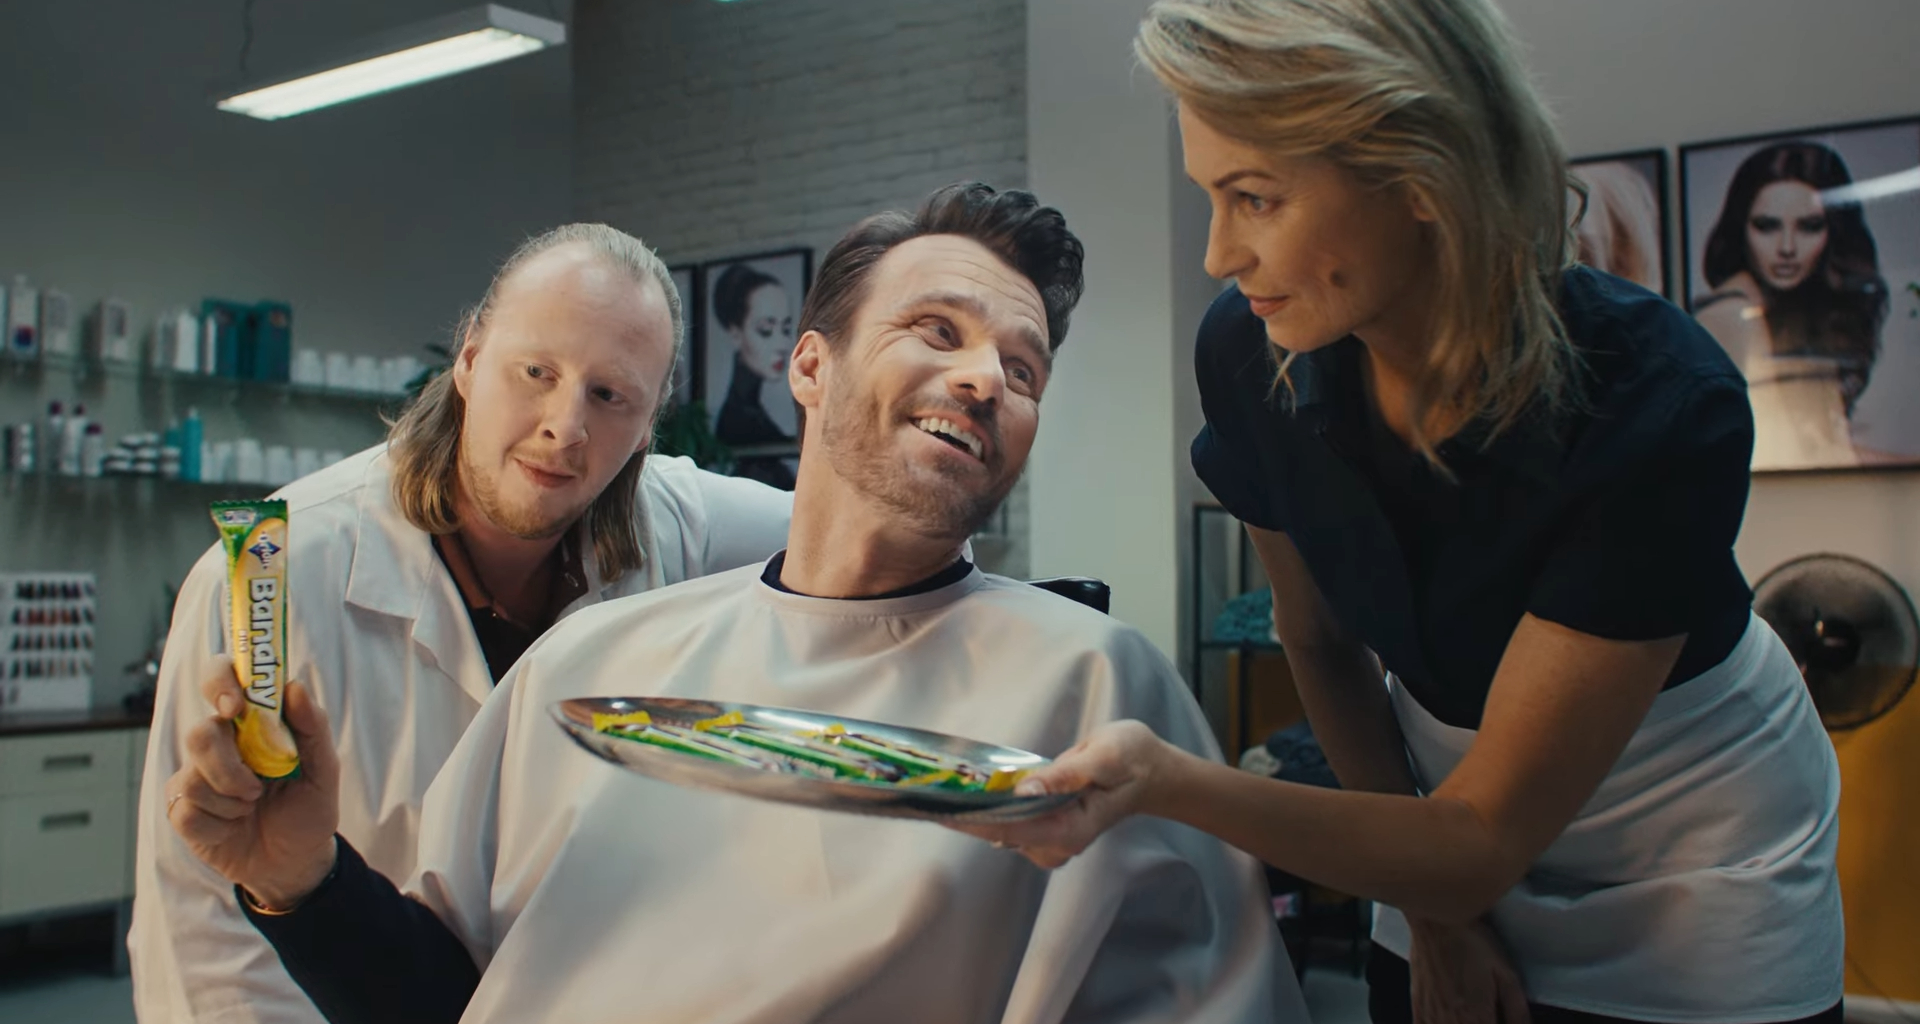 Muž sedí u kadeřníka s pláštěm, druhý muž ukazuje tyčinku Banány, žena kadeřnice předkládá nabídku produktů na vlasy.